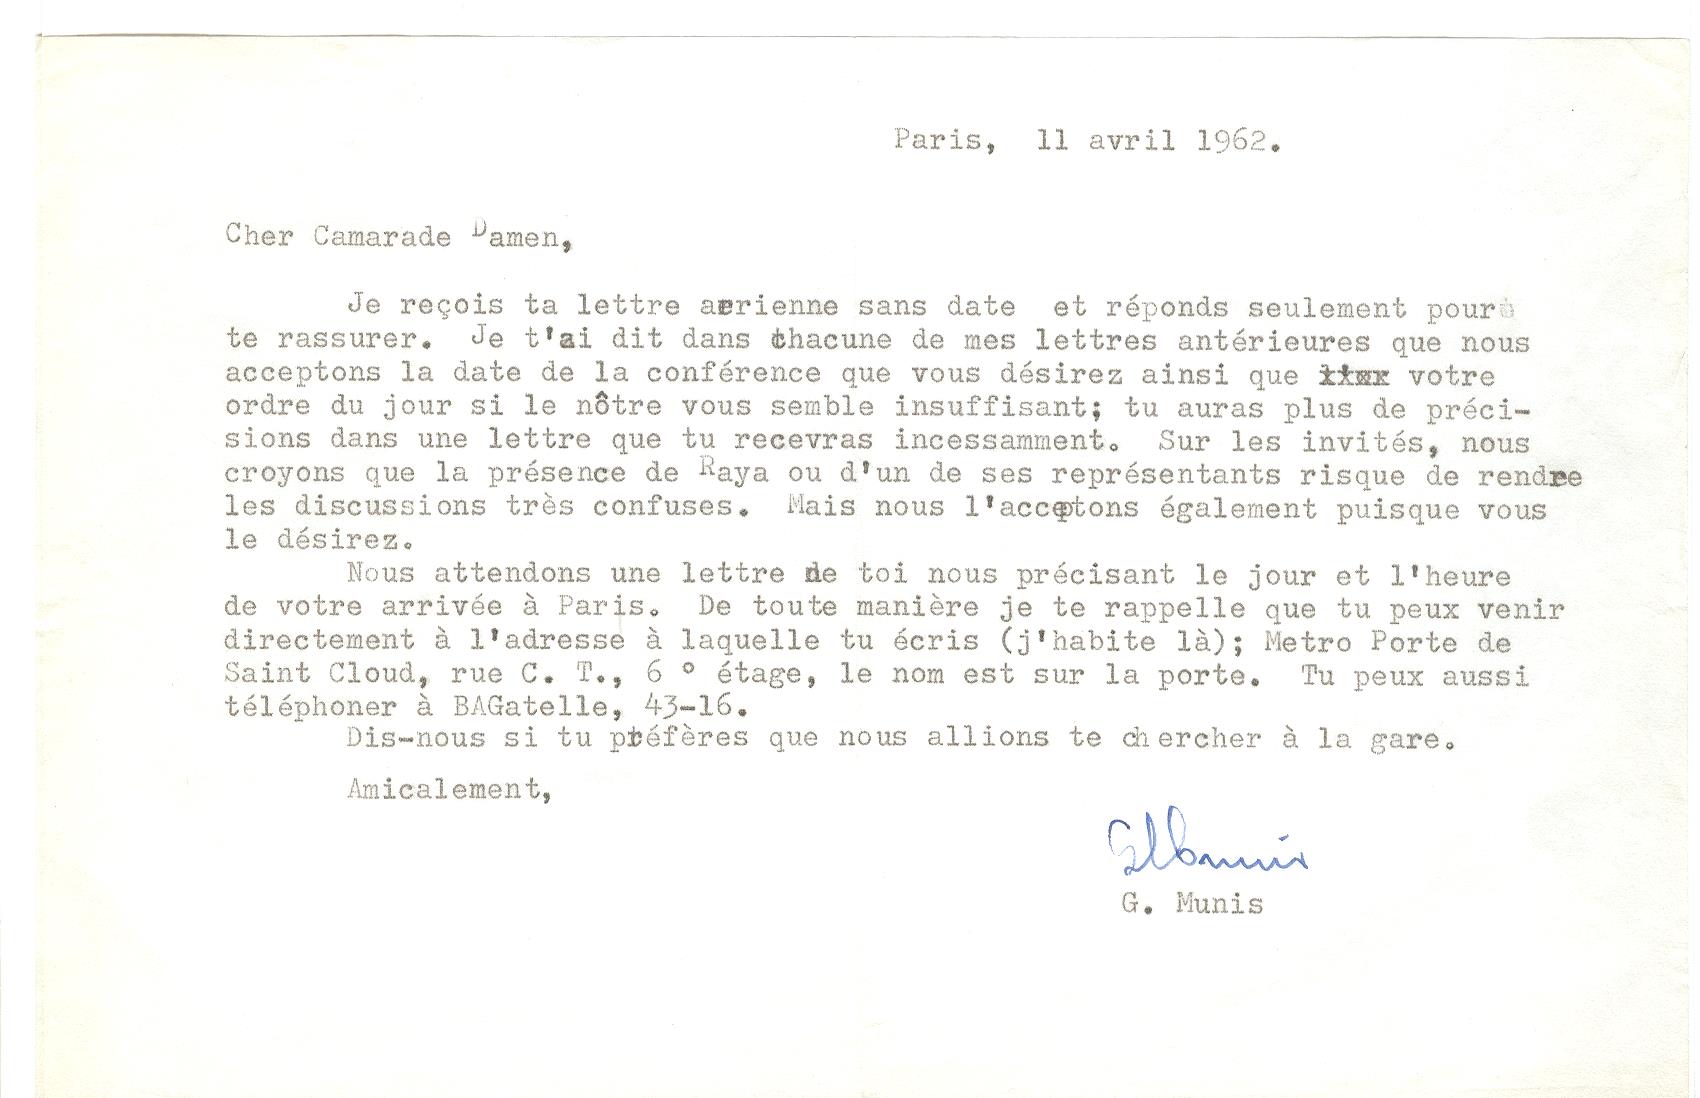 07 >> 5 - Lettera di Munis a Onorato Damen (11 aprile 1962)